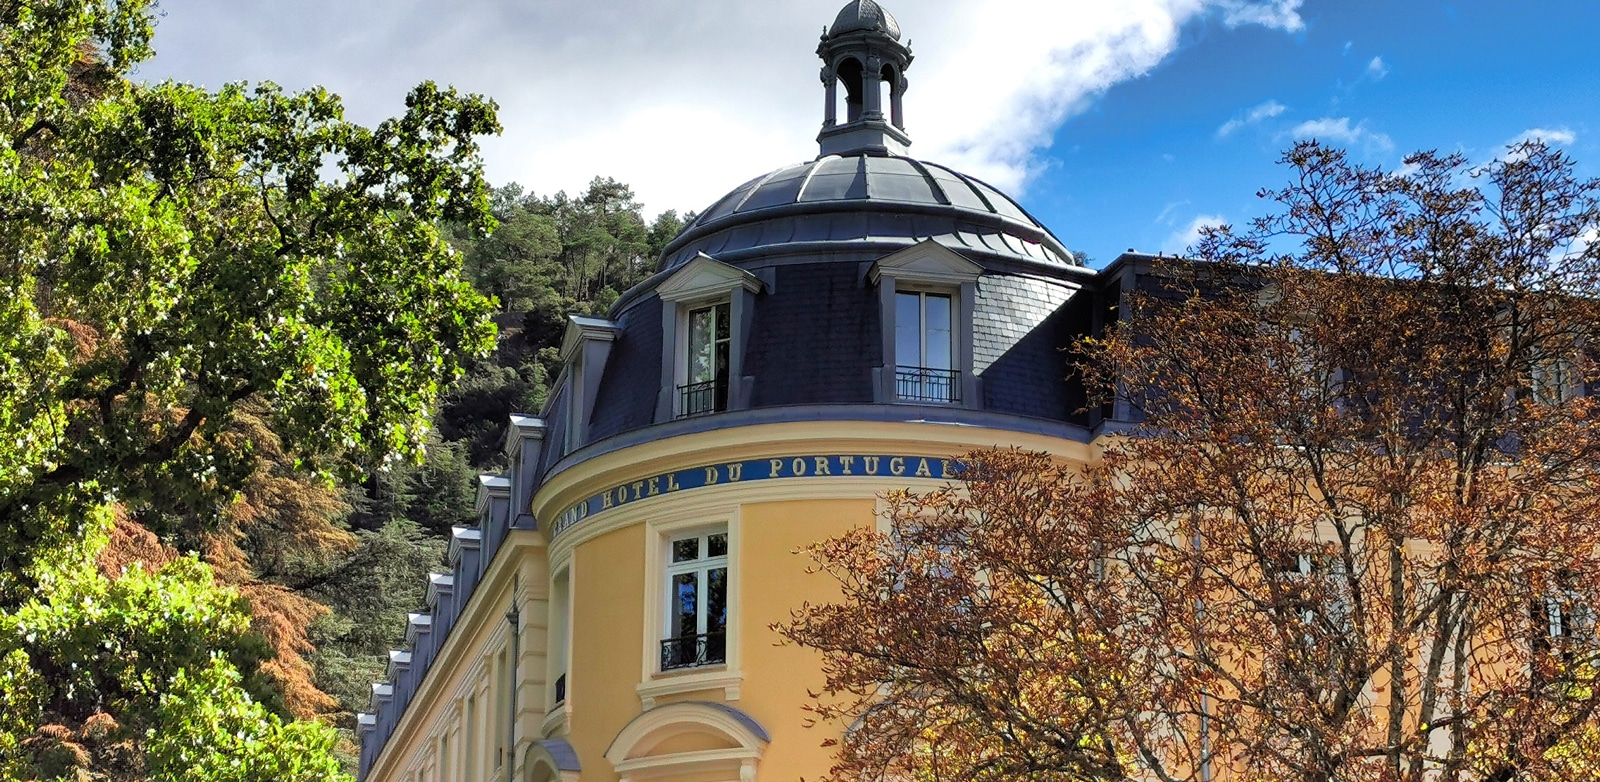 VERNET-LES-BAINS – Hôtel Premium du Portugal